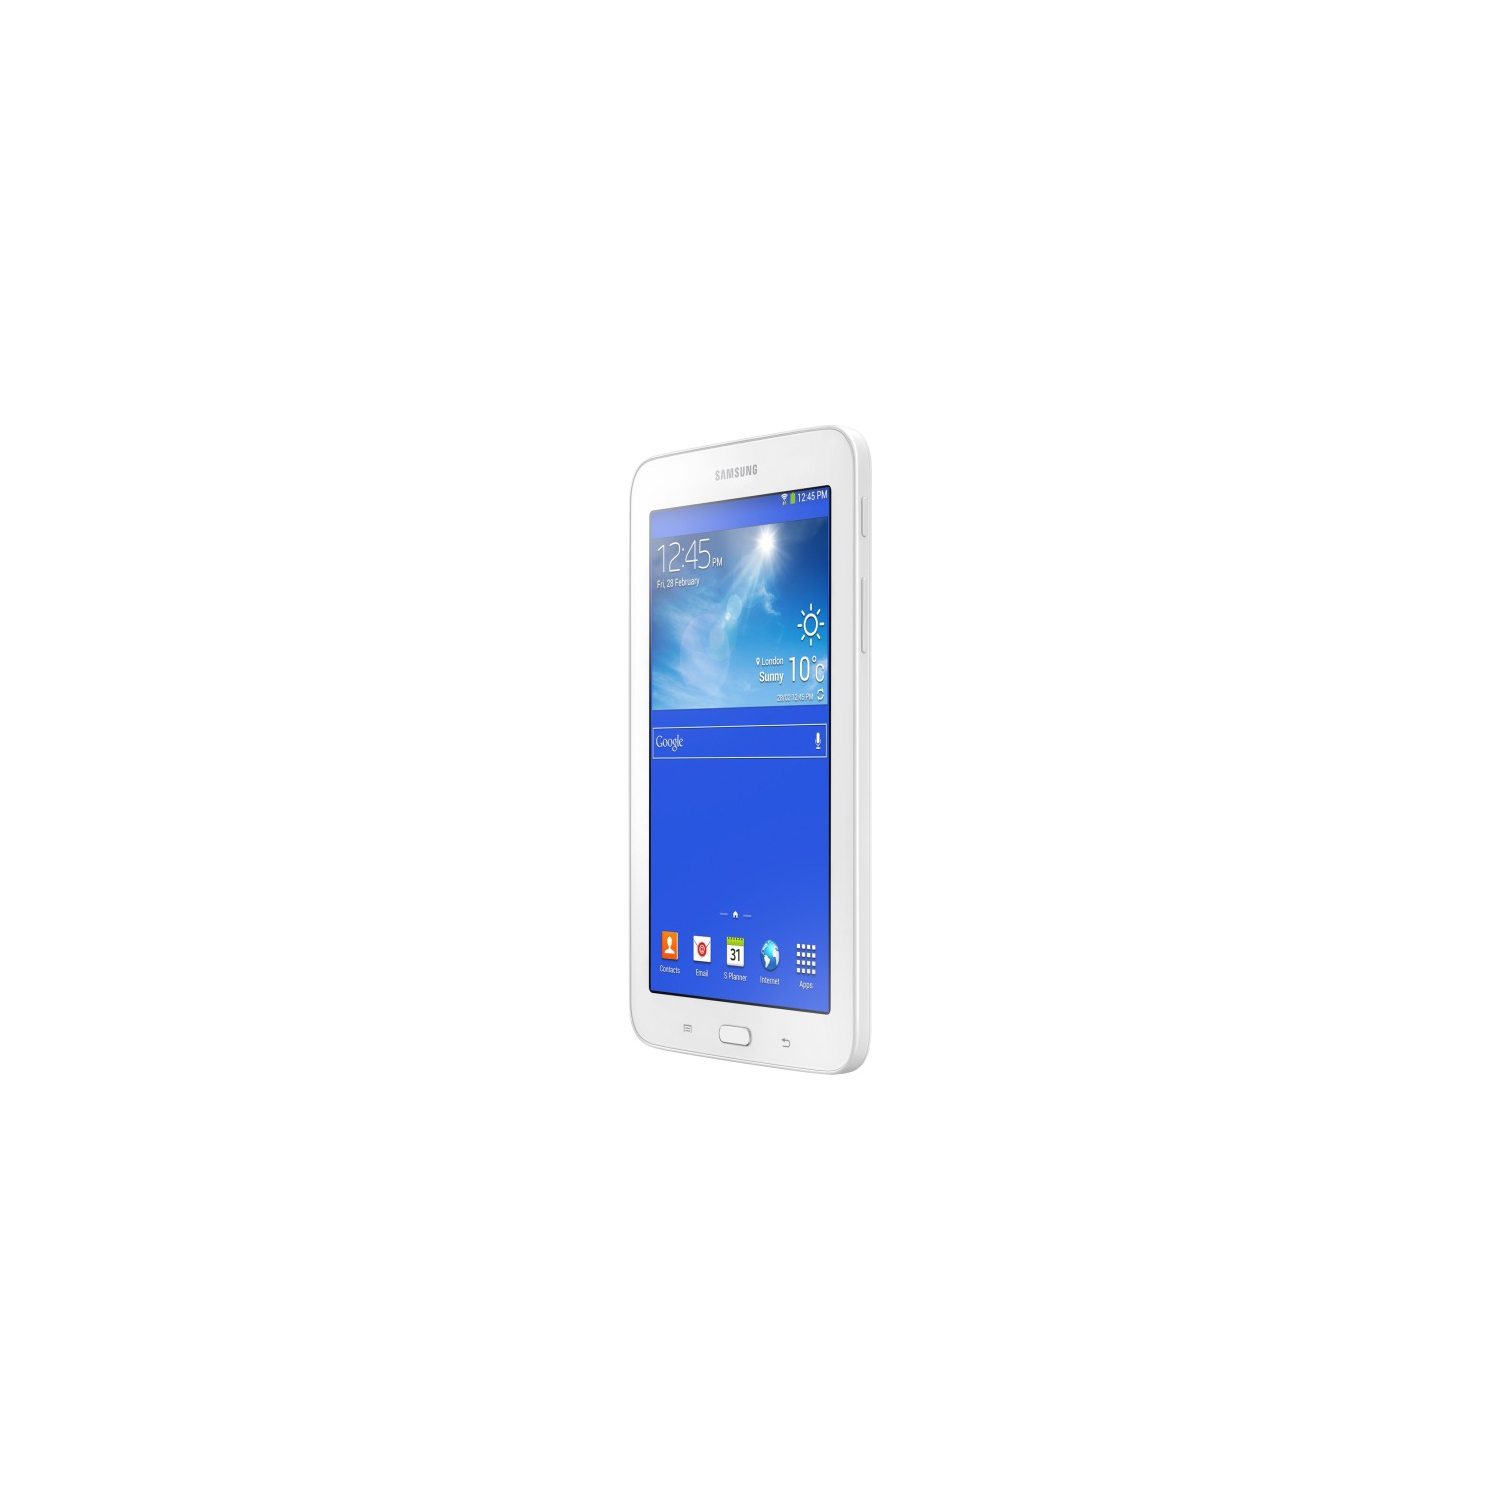 Samsung Galaxy Tab E Lite SM-T113 Tablet - 7" - 1 GB RAM - 8 GB Storage - Cream White